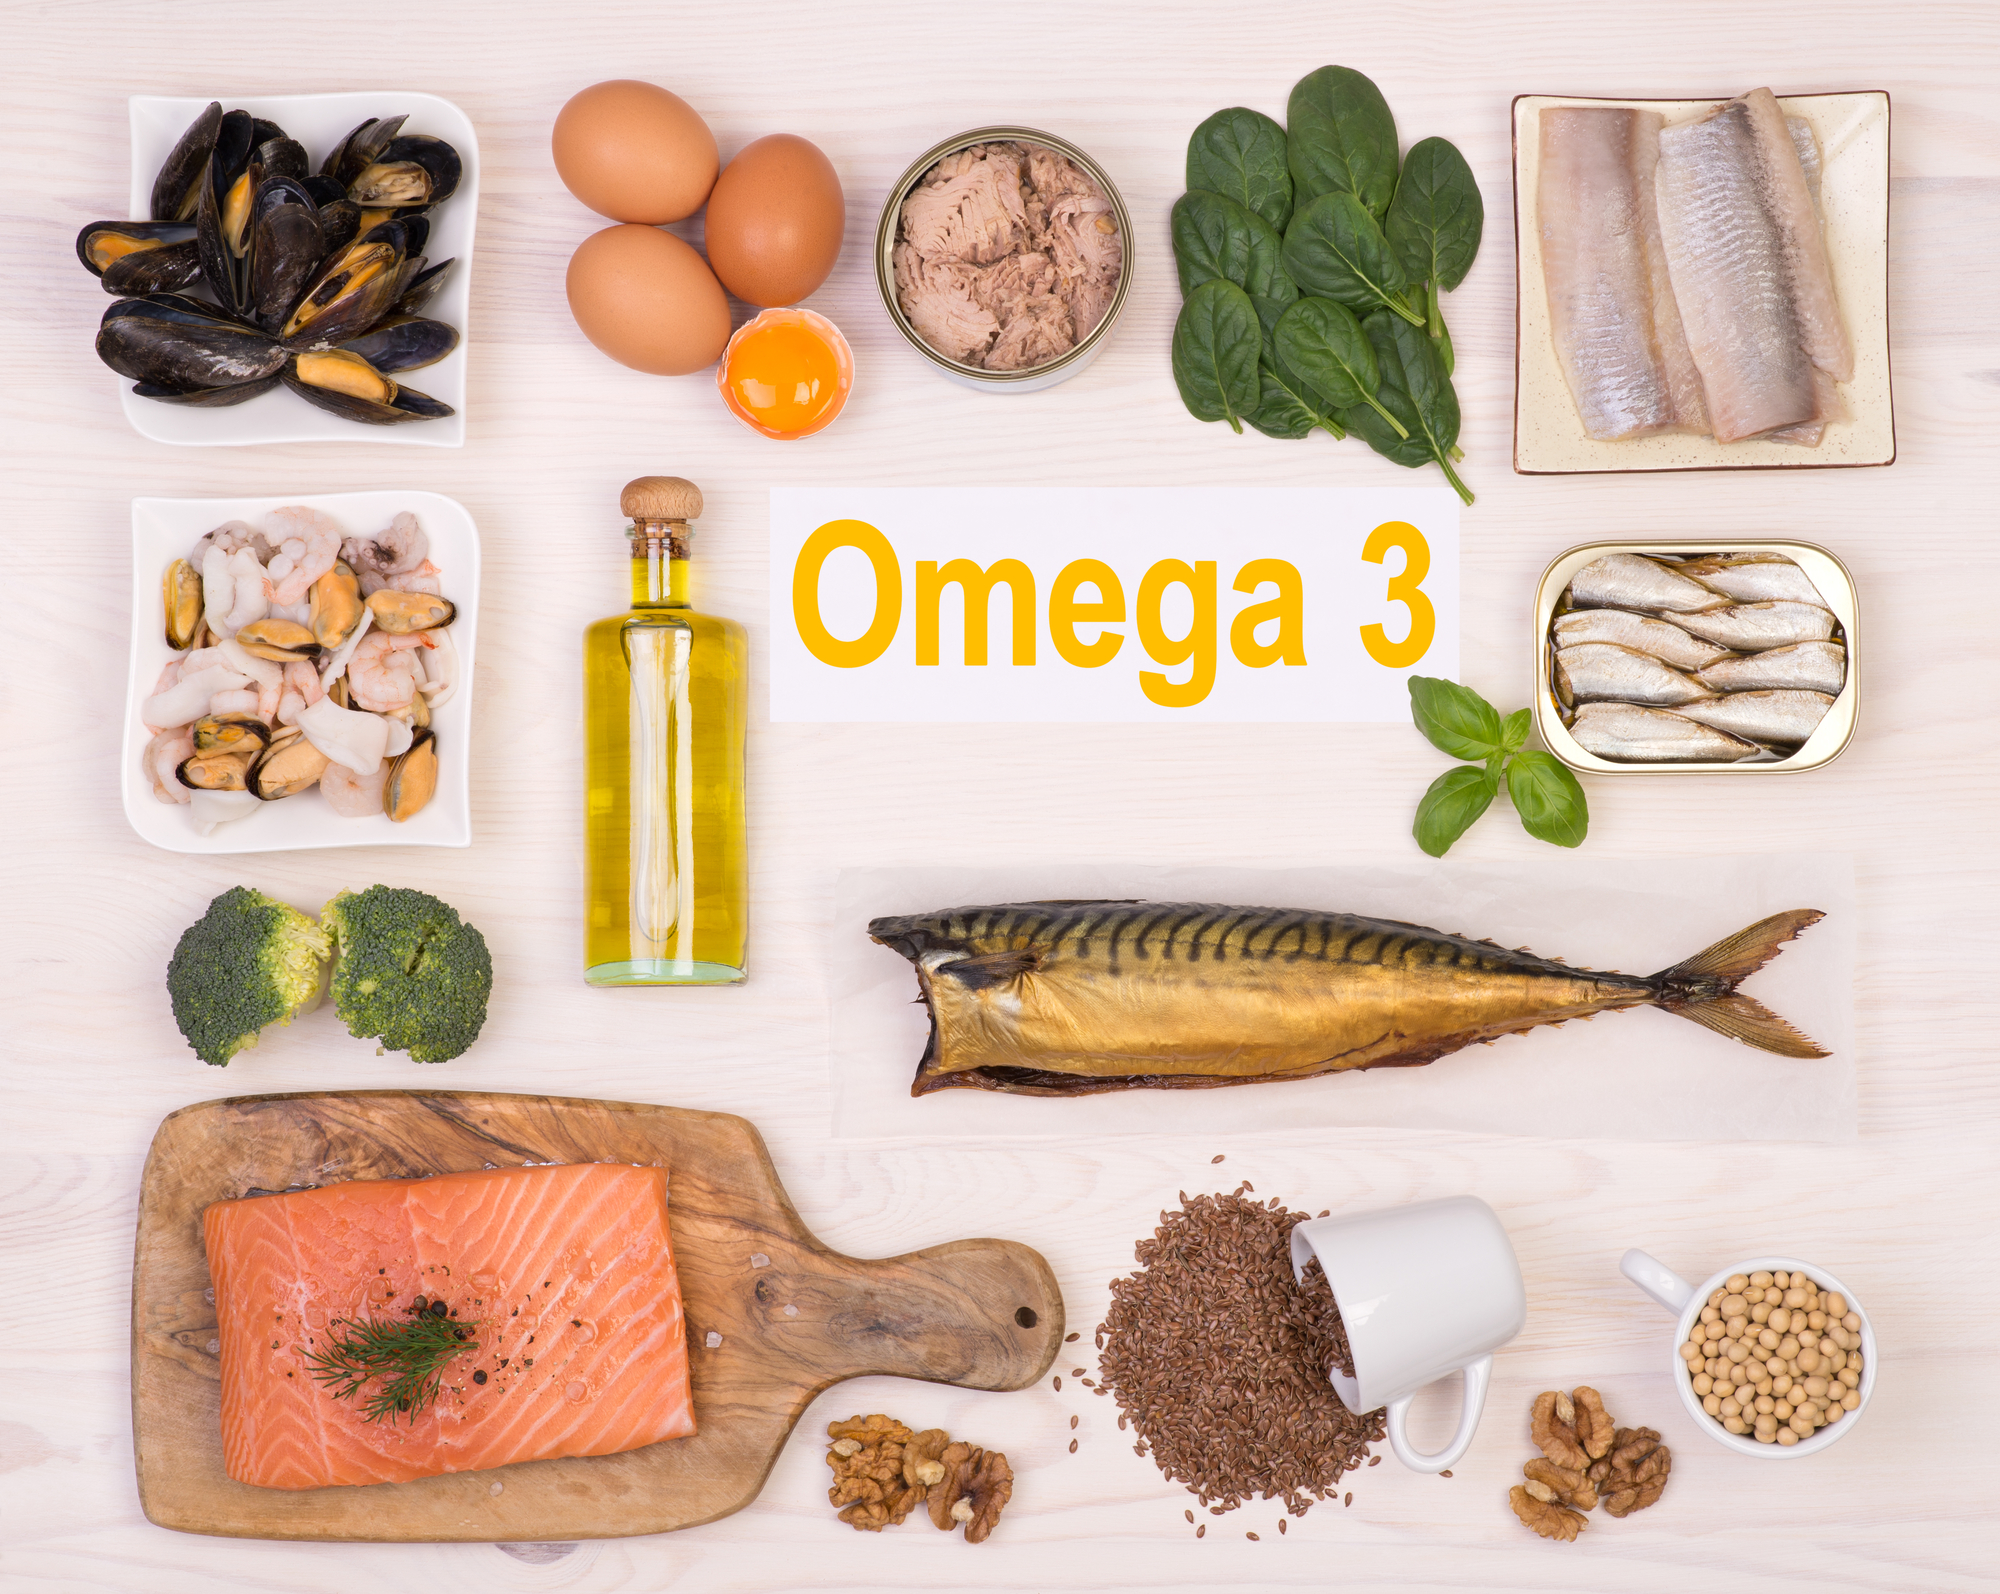 omega 3 foods